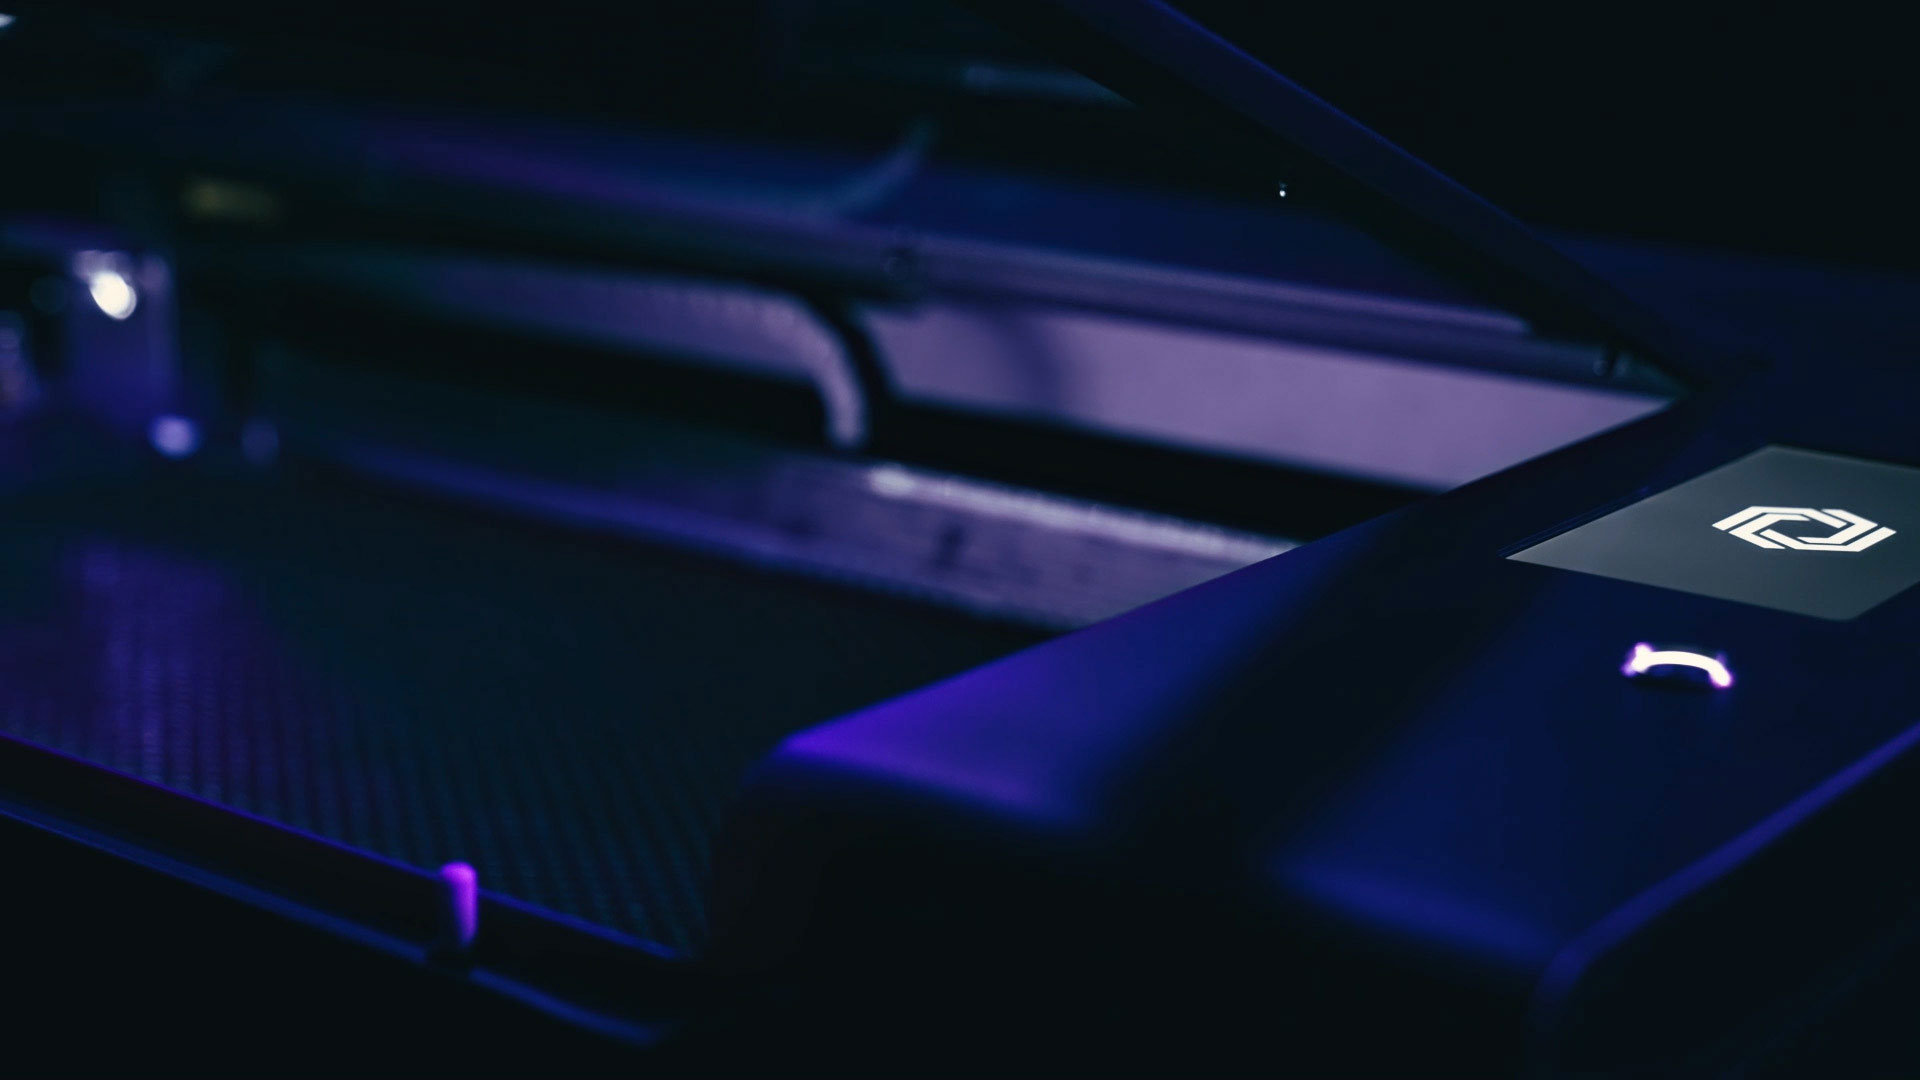 Blue and purple lighting cast over a closeup of a HEXA Laser Cutter